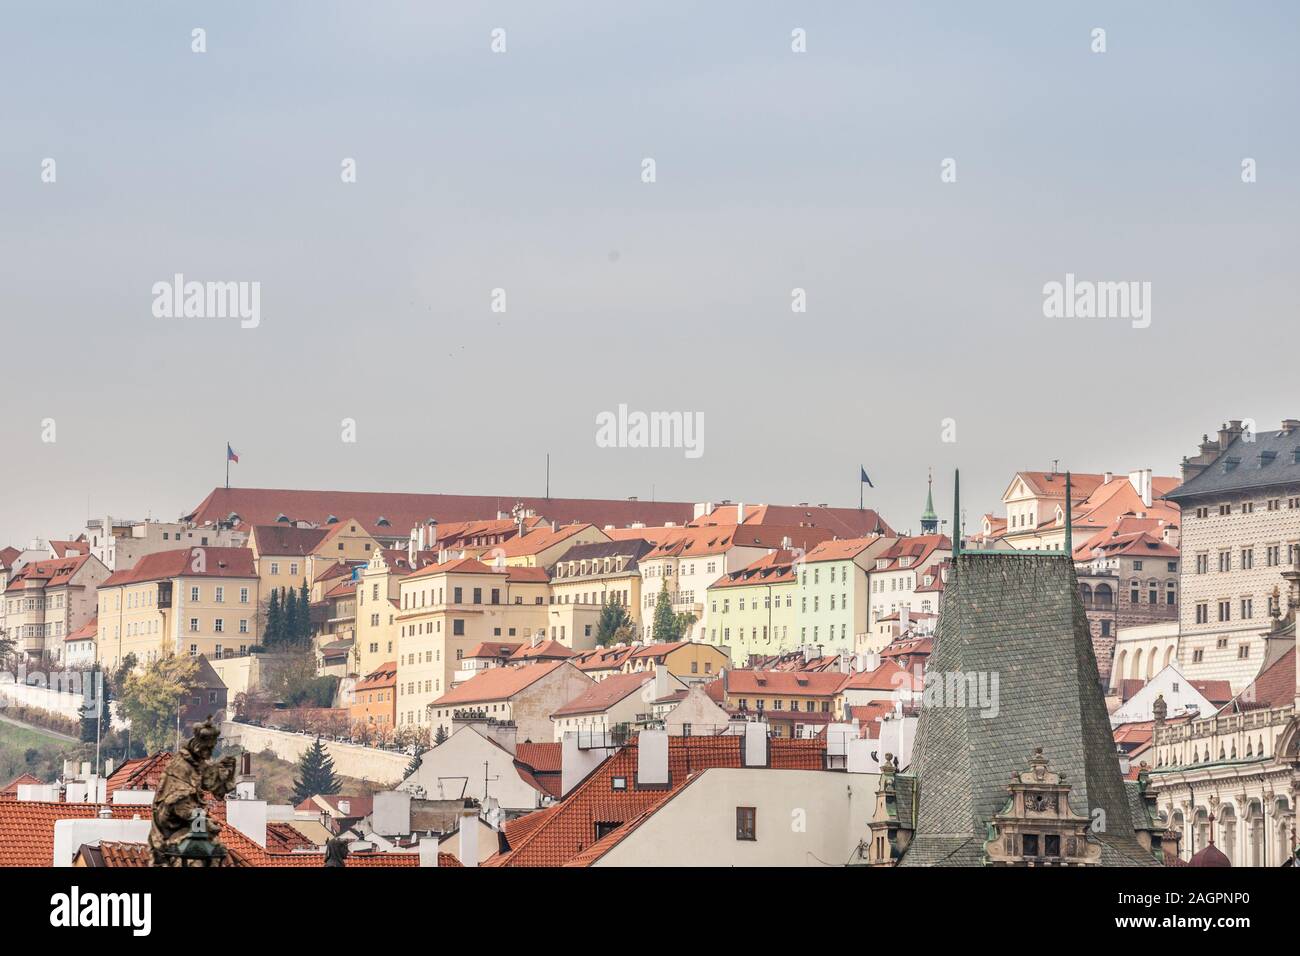 Panorama du Château de Prague (Prazsky Hrad) hill, également appelé Hradcany, en République tchèque, vu depuis le quartier de mala strana, avec ses typiques baroq coiffeuse Banque D'Images